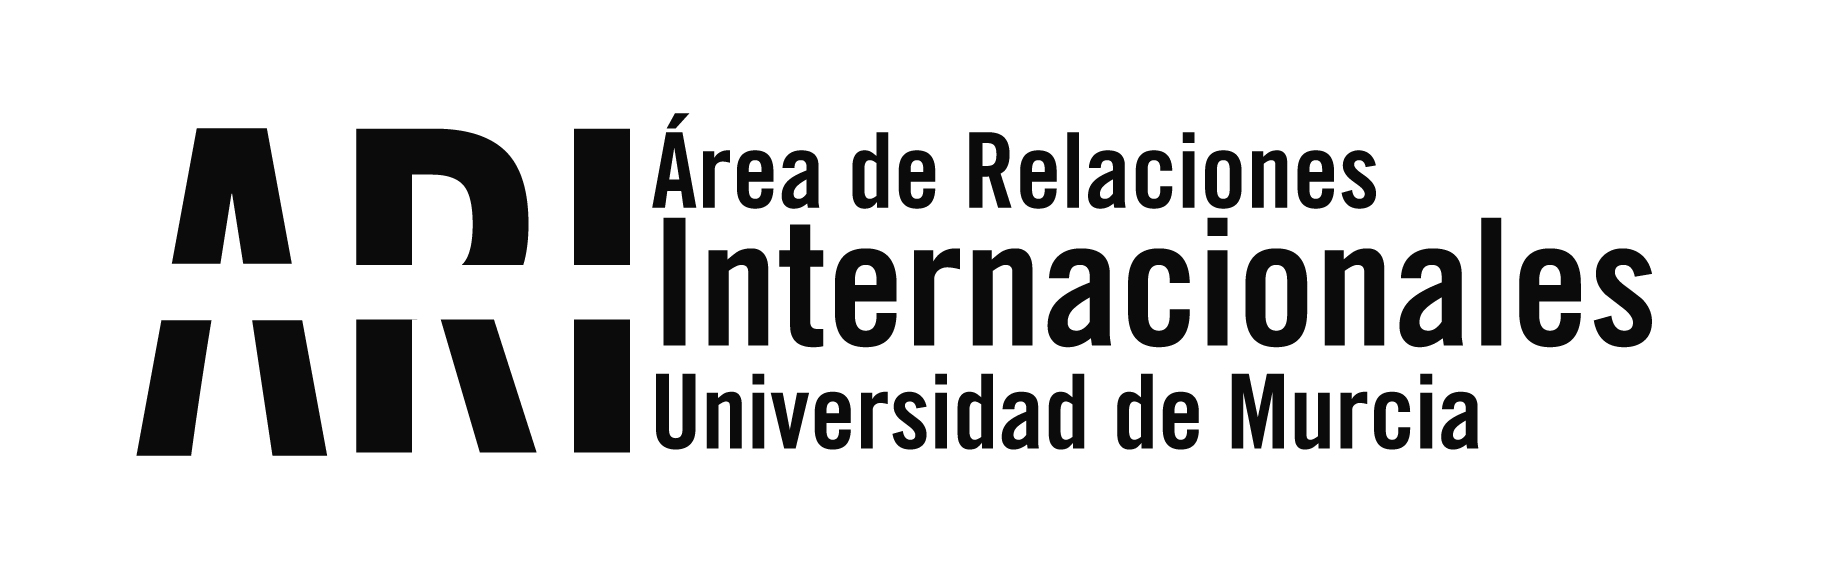 Boletín informativo/Newsletter nº 11 del Vicerrectorado de Internacionalización de la UMU del lunes 8 de octubre de 2018 - Área de Relaciones Internacionales